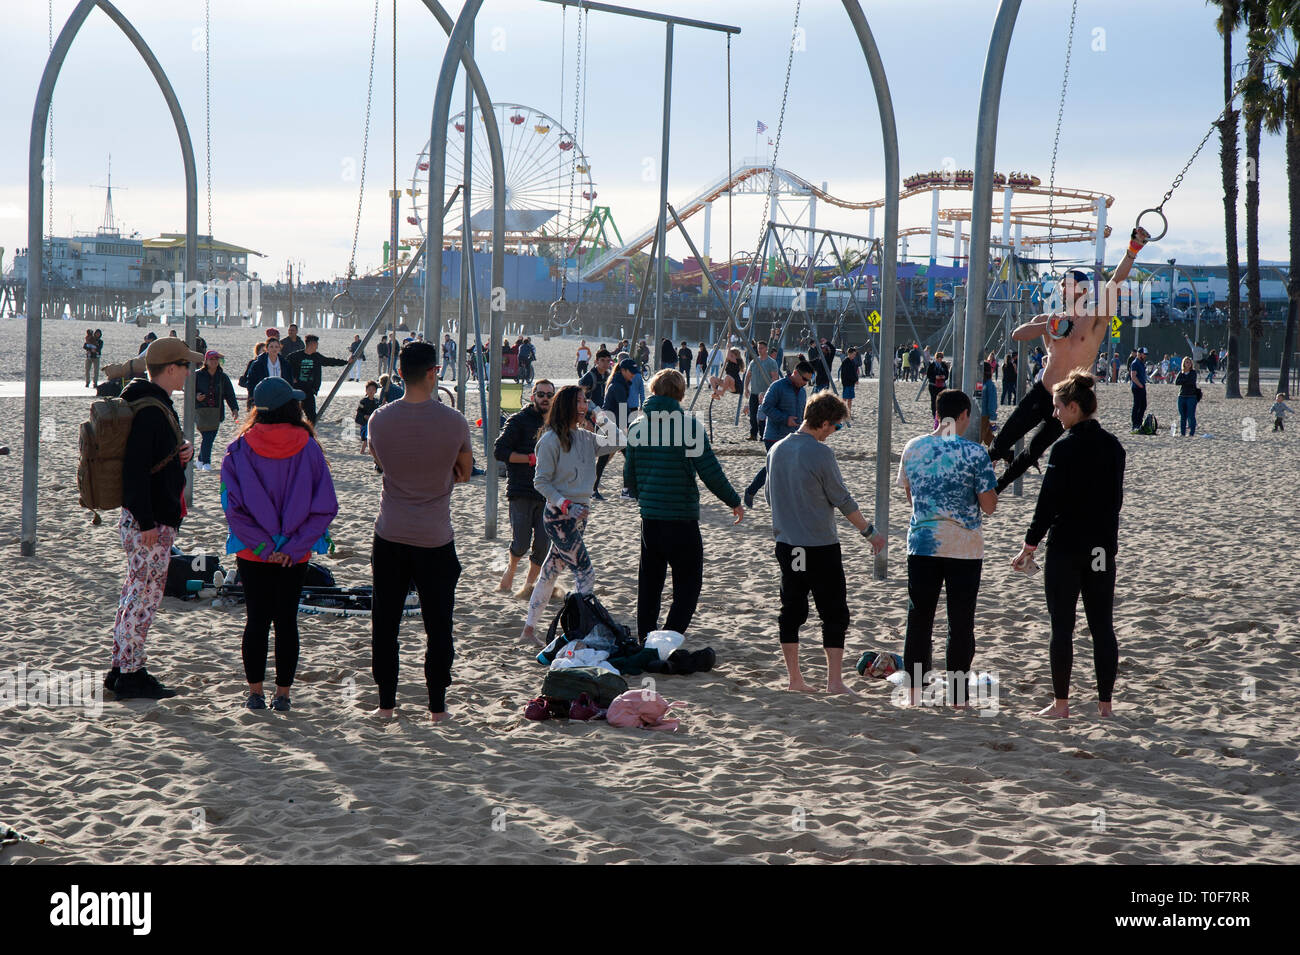 Aux personnes bénéficiant d'une aire de jeux sur la plage de Santa Monica près de l'embarcadère. Banque D'Images